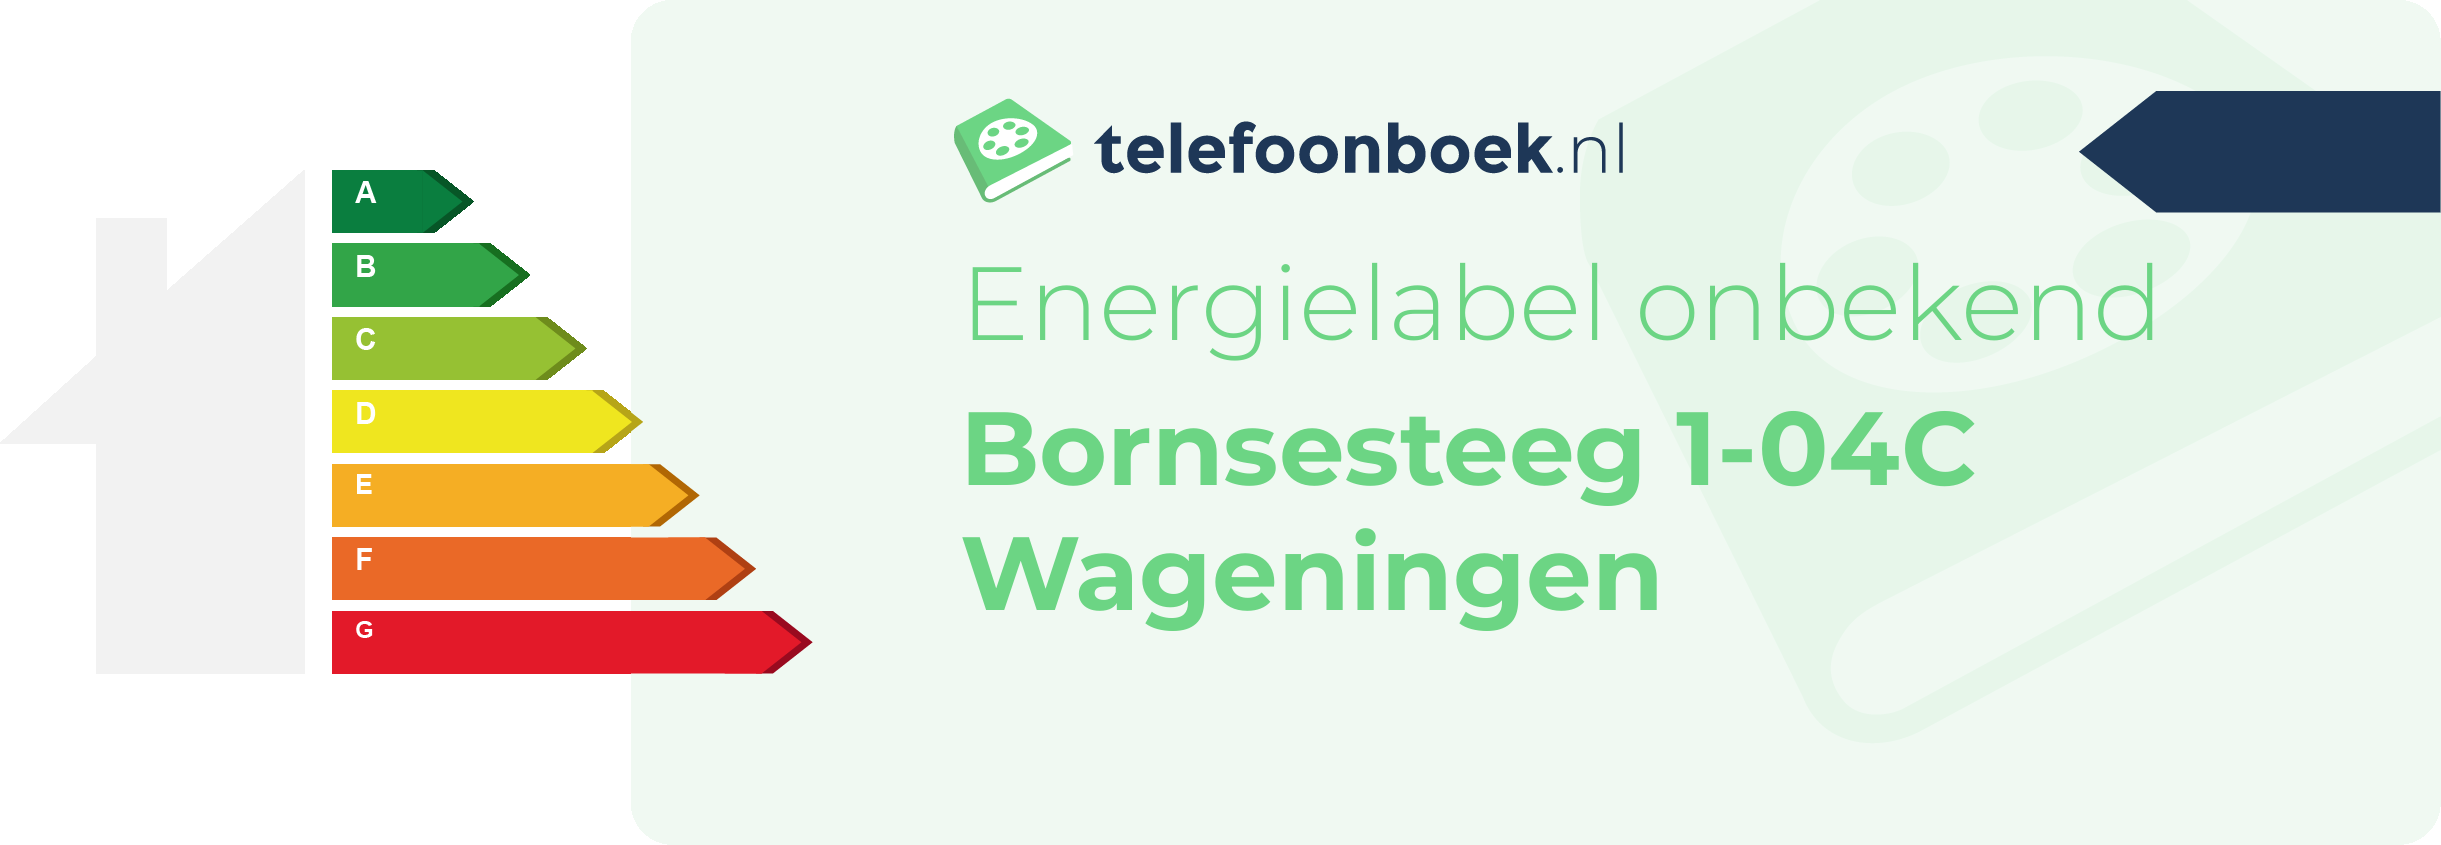 Energielabel Bornsesteeg 1-04C Wageningen